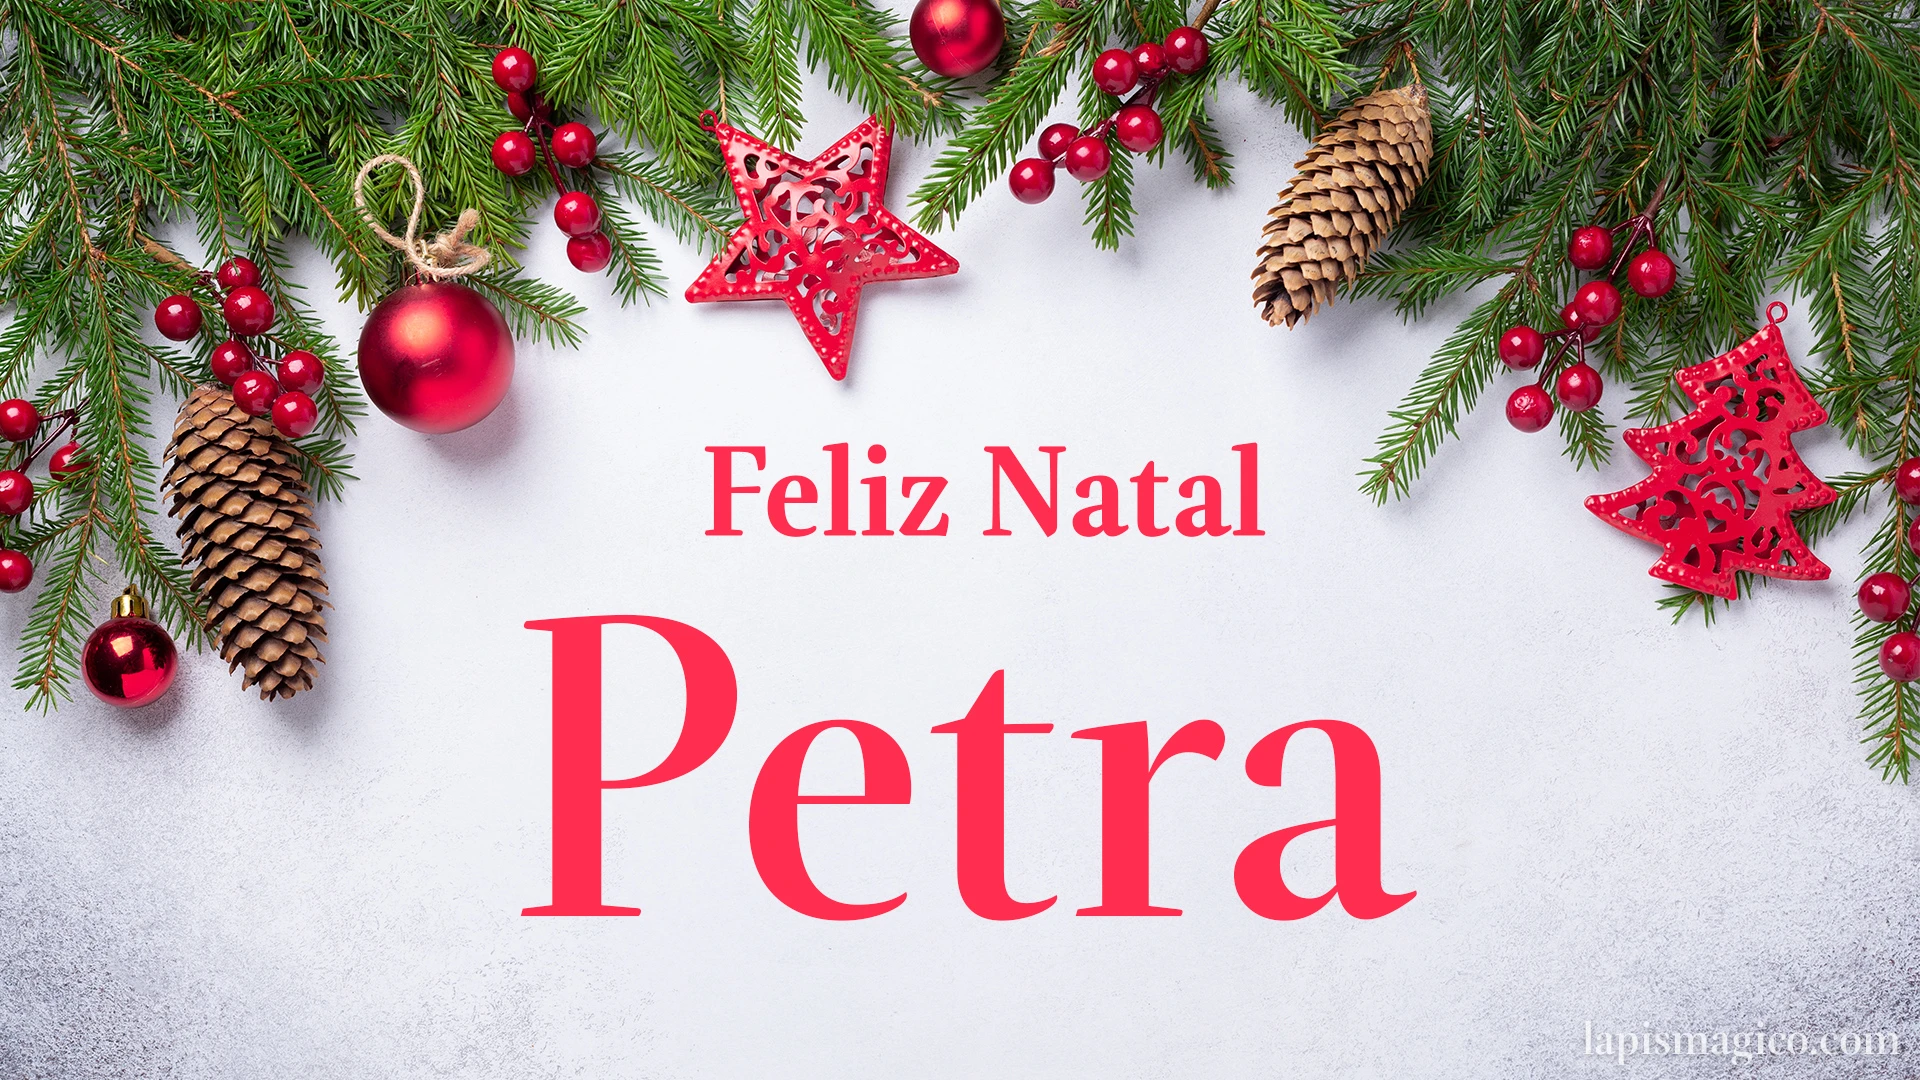 Oh Petra, cinco postais de Feliz Natal Postal com o teu nome